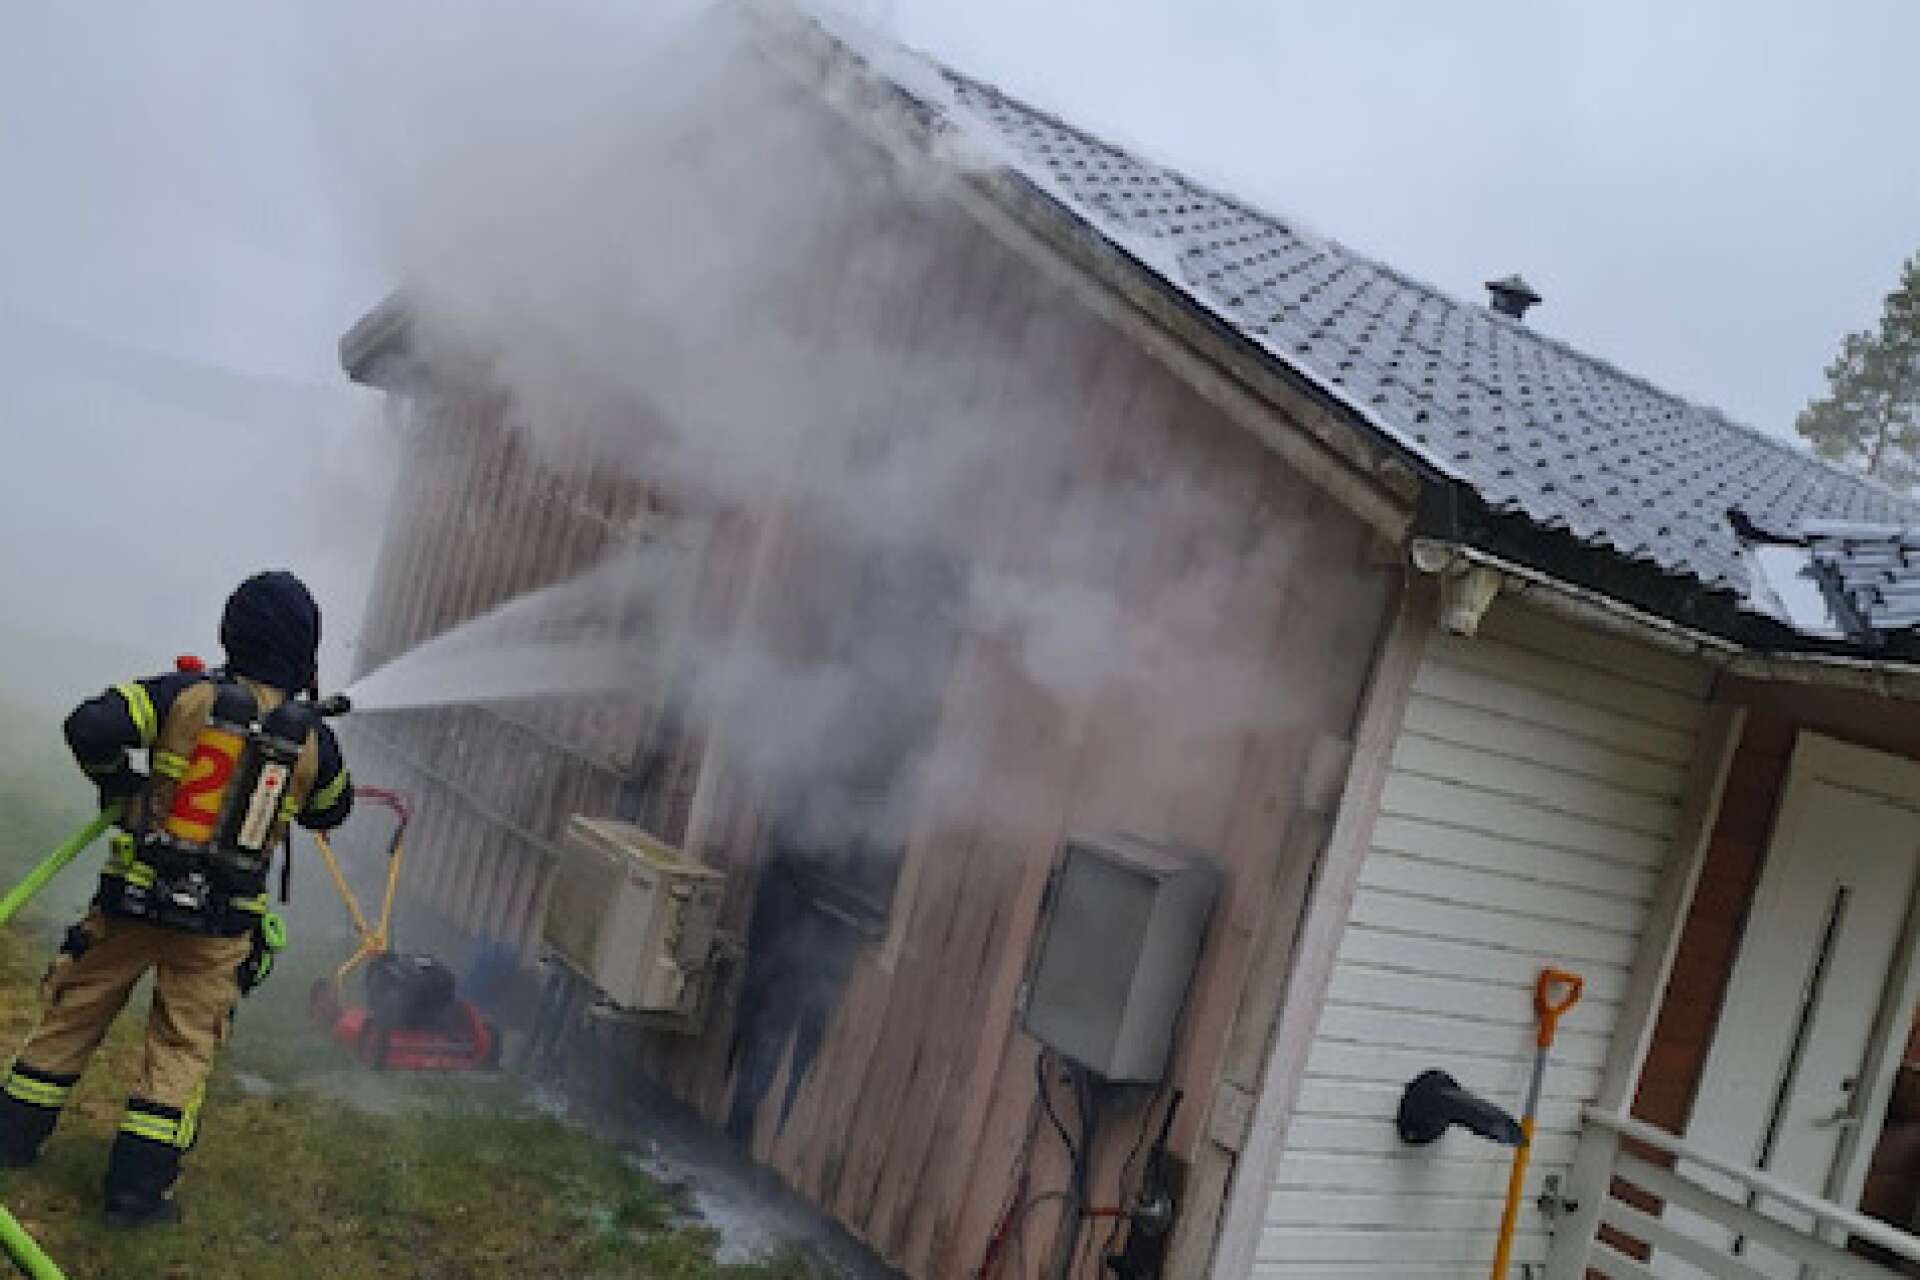 Branden i villan startade i husgaveln, enligt Räddningstjänsten.